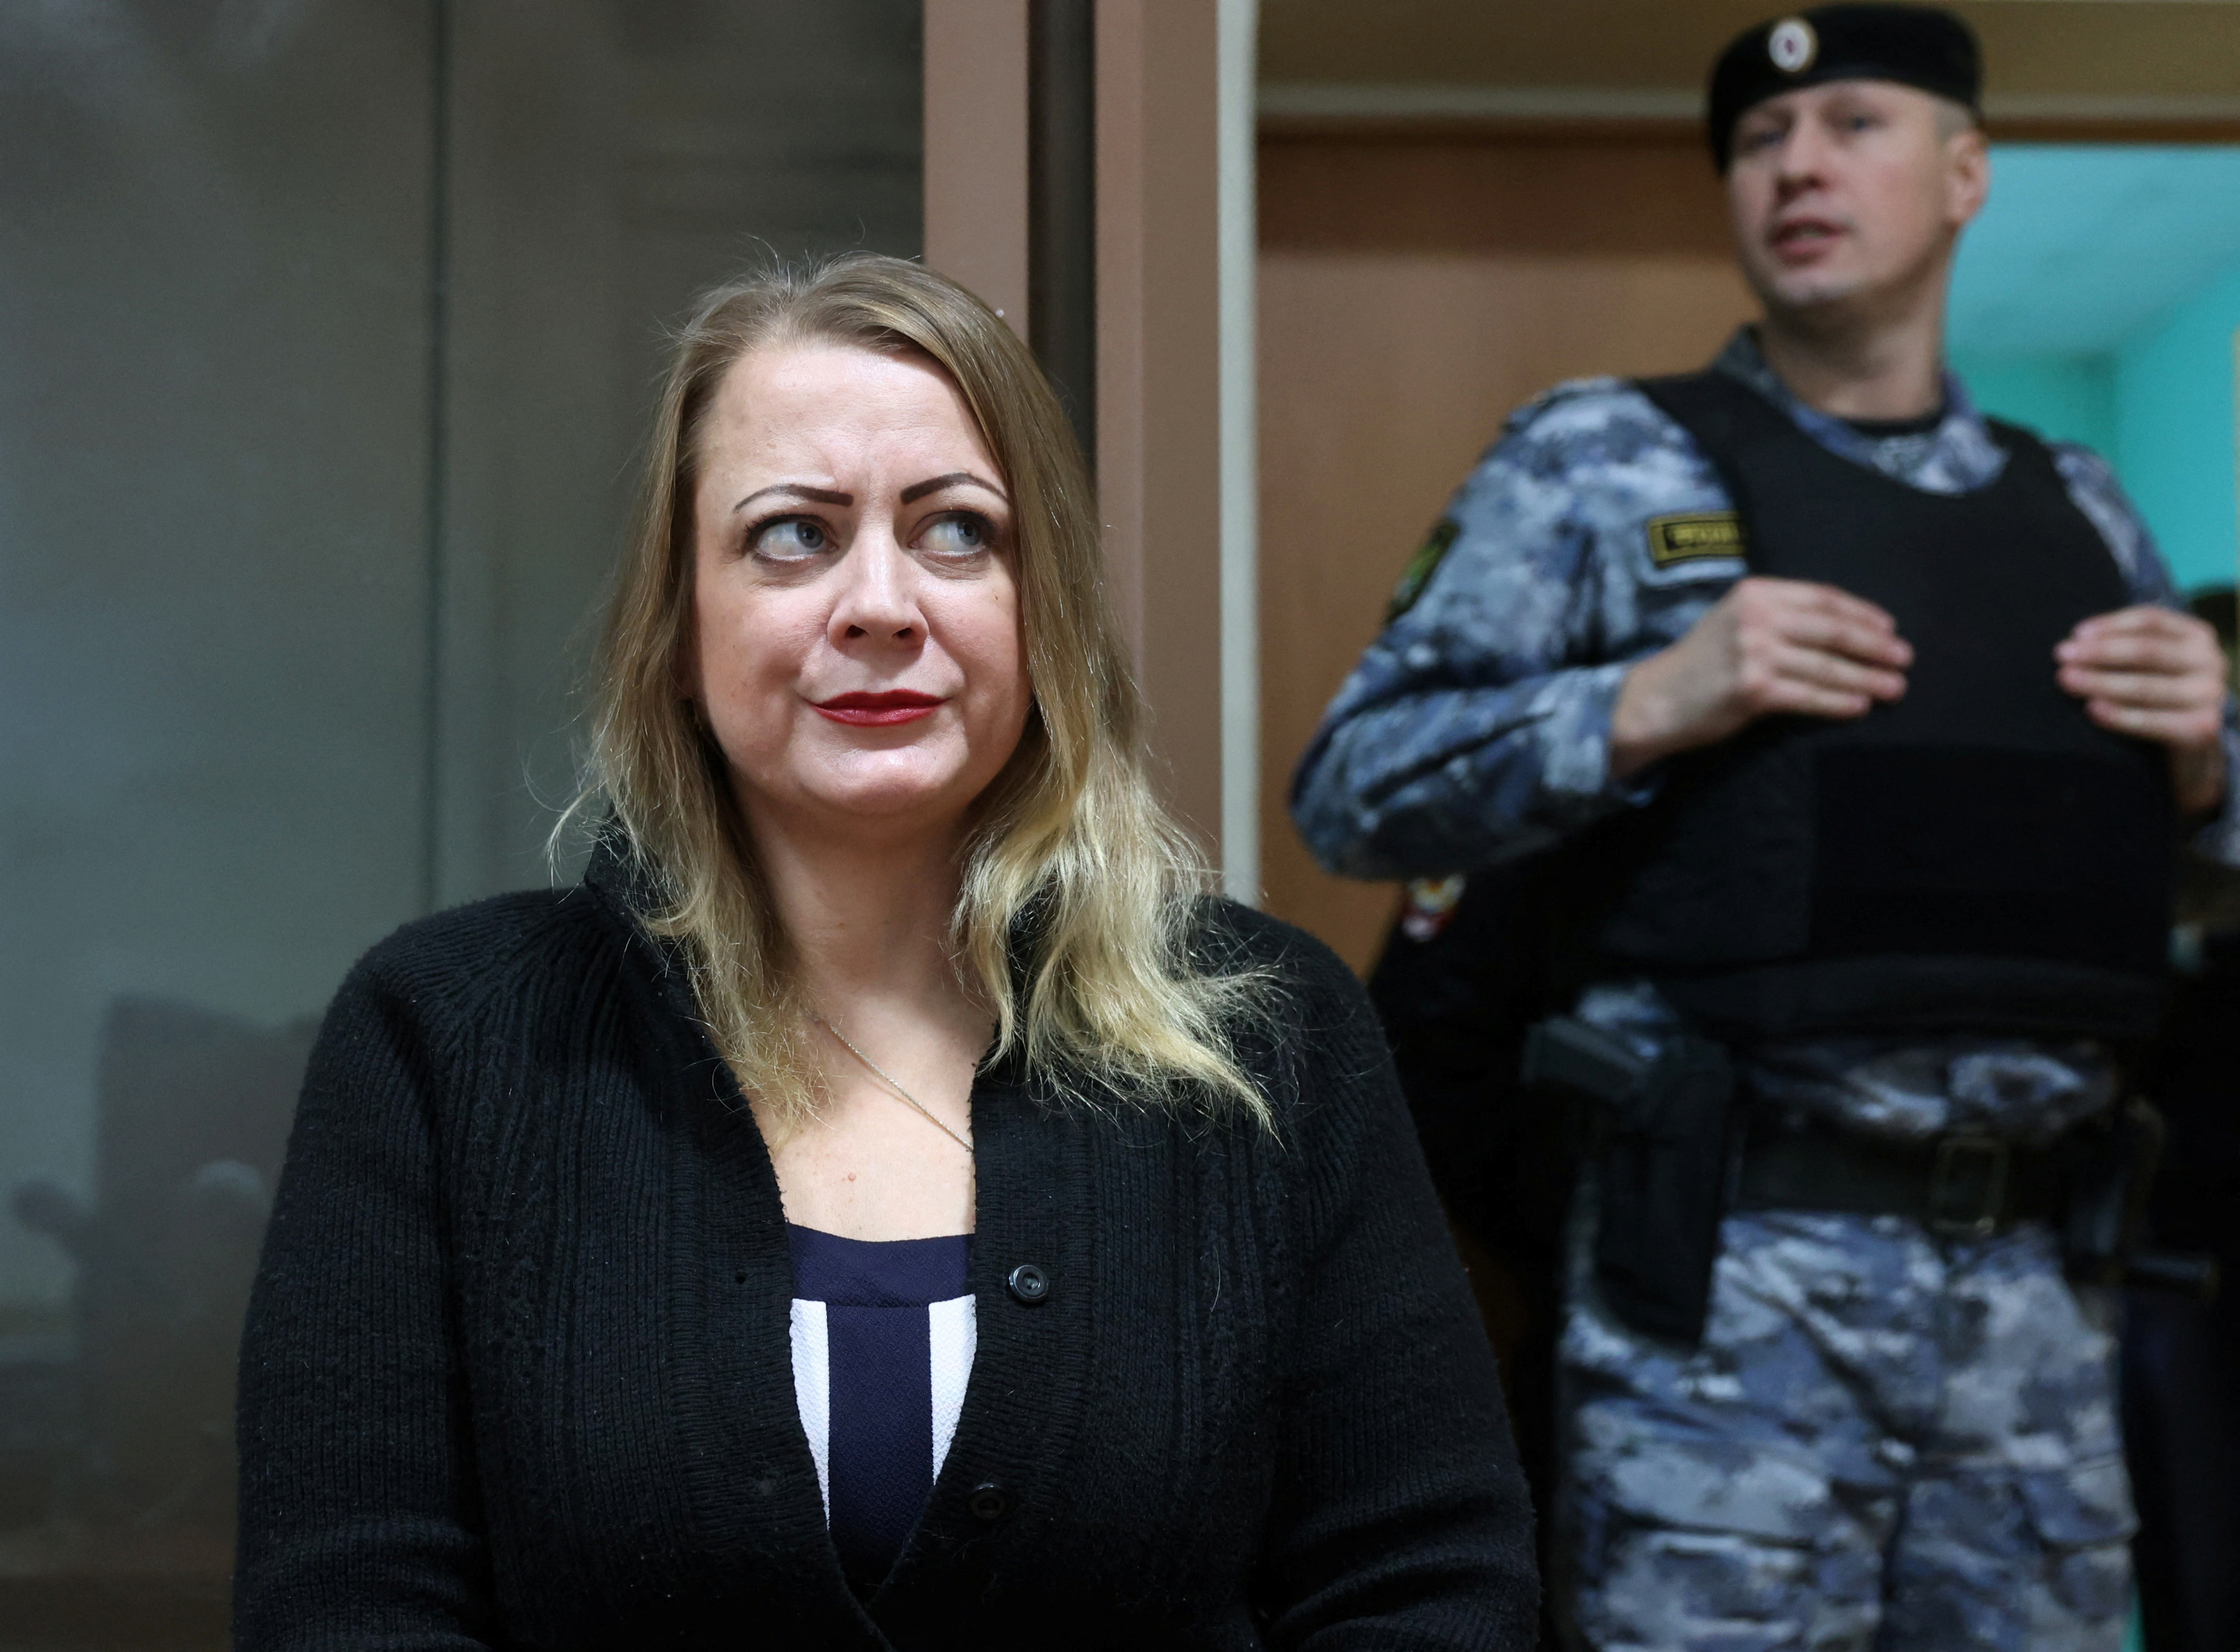 U.S. citizen Sarah Krivanek attends a court hearing in Ryazan